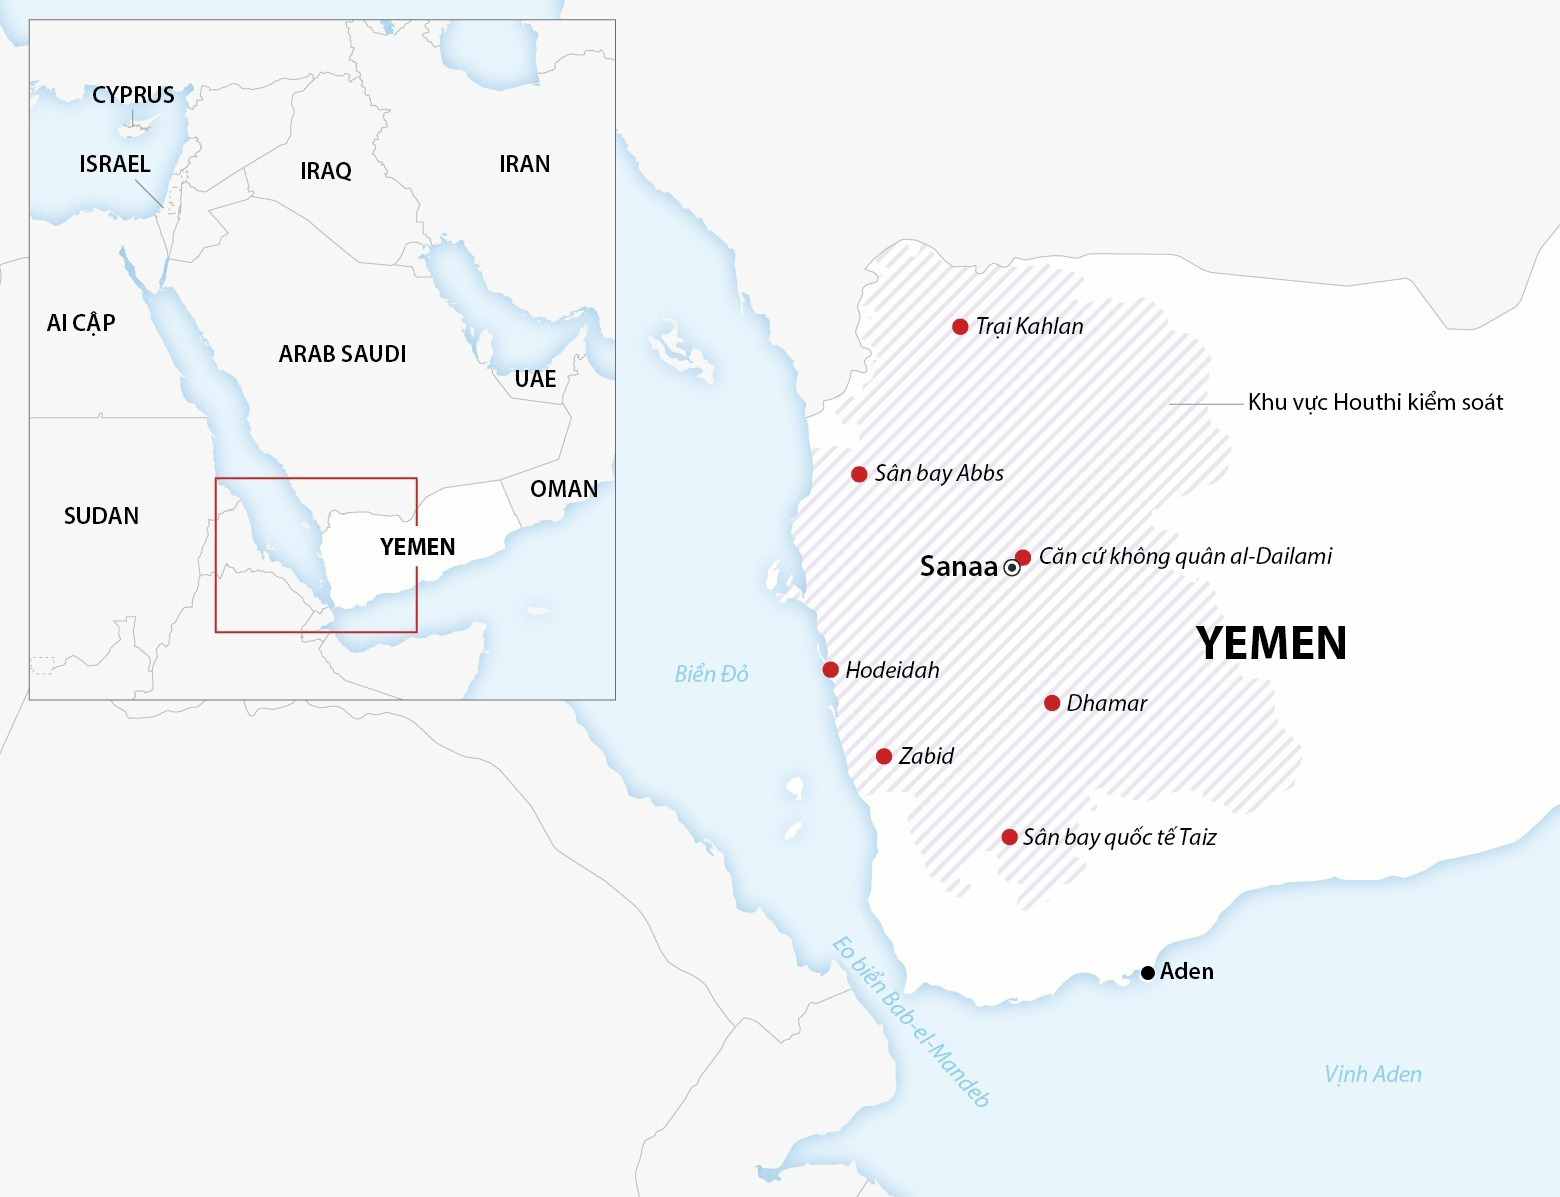 Khu vực lực lượng Houthi kiểm soát tại Yemen. Đồ họa: AFP